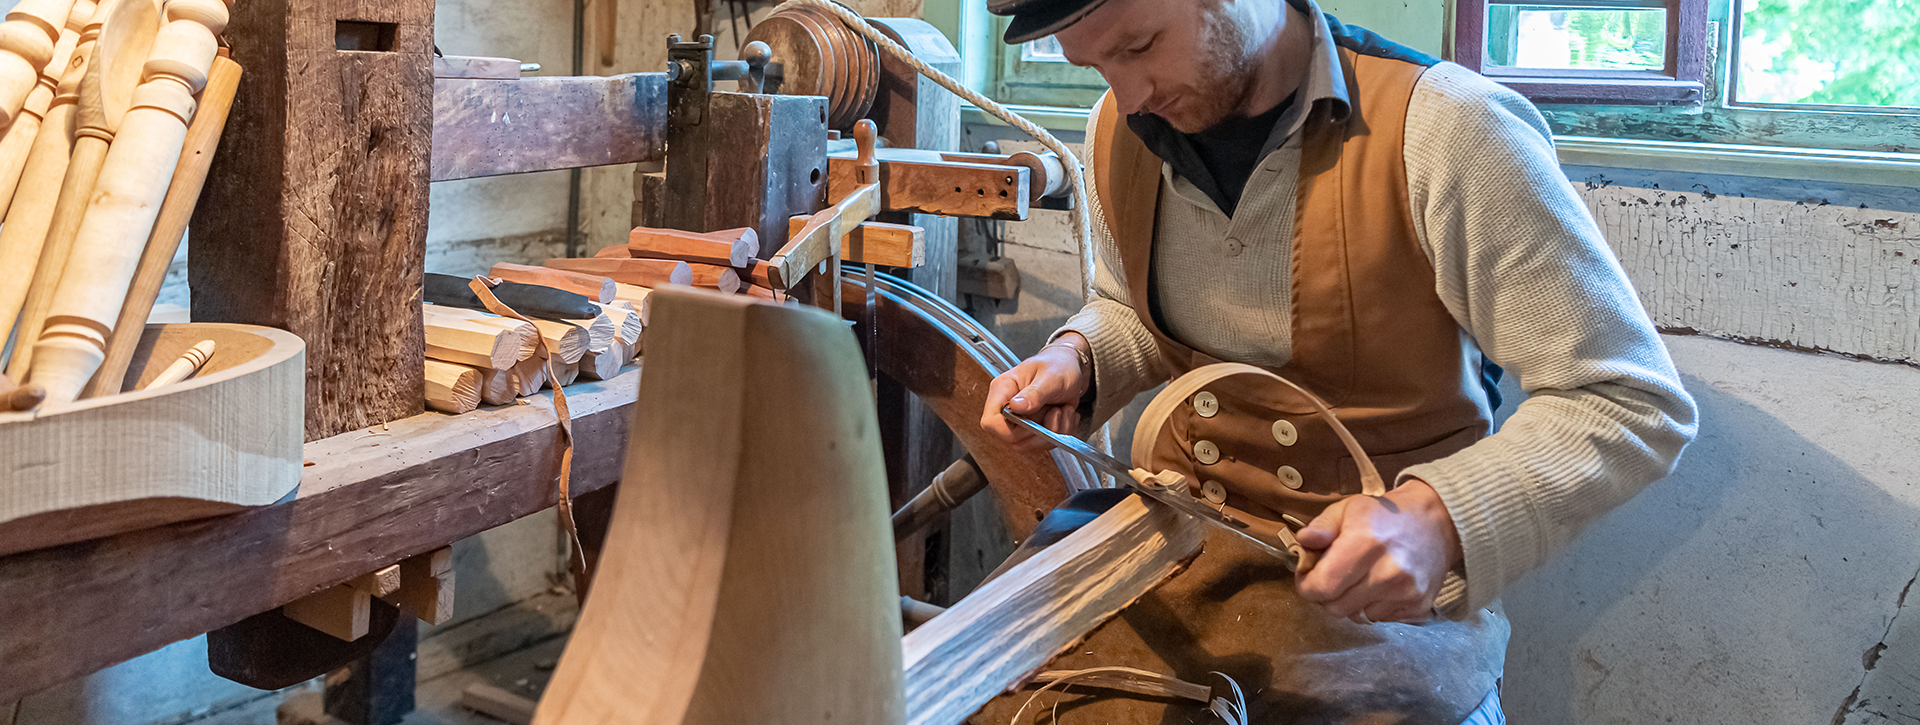 Ein Mann arbeitet mit einem Hobel an einem Holzstück